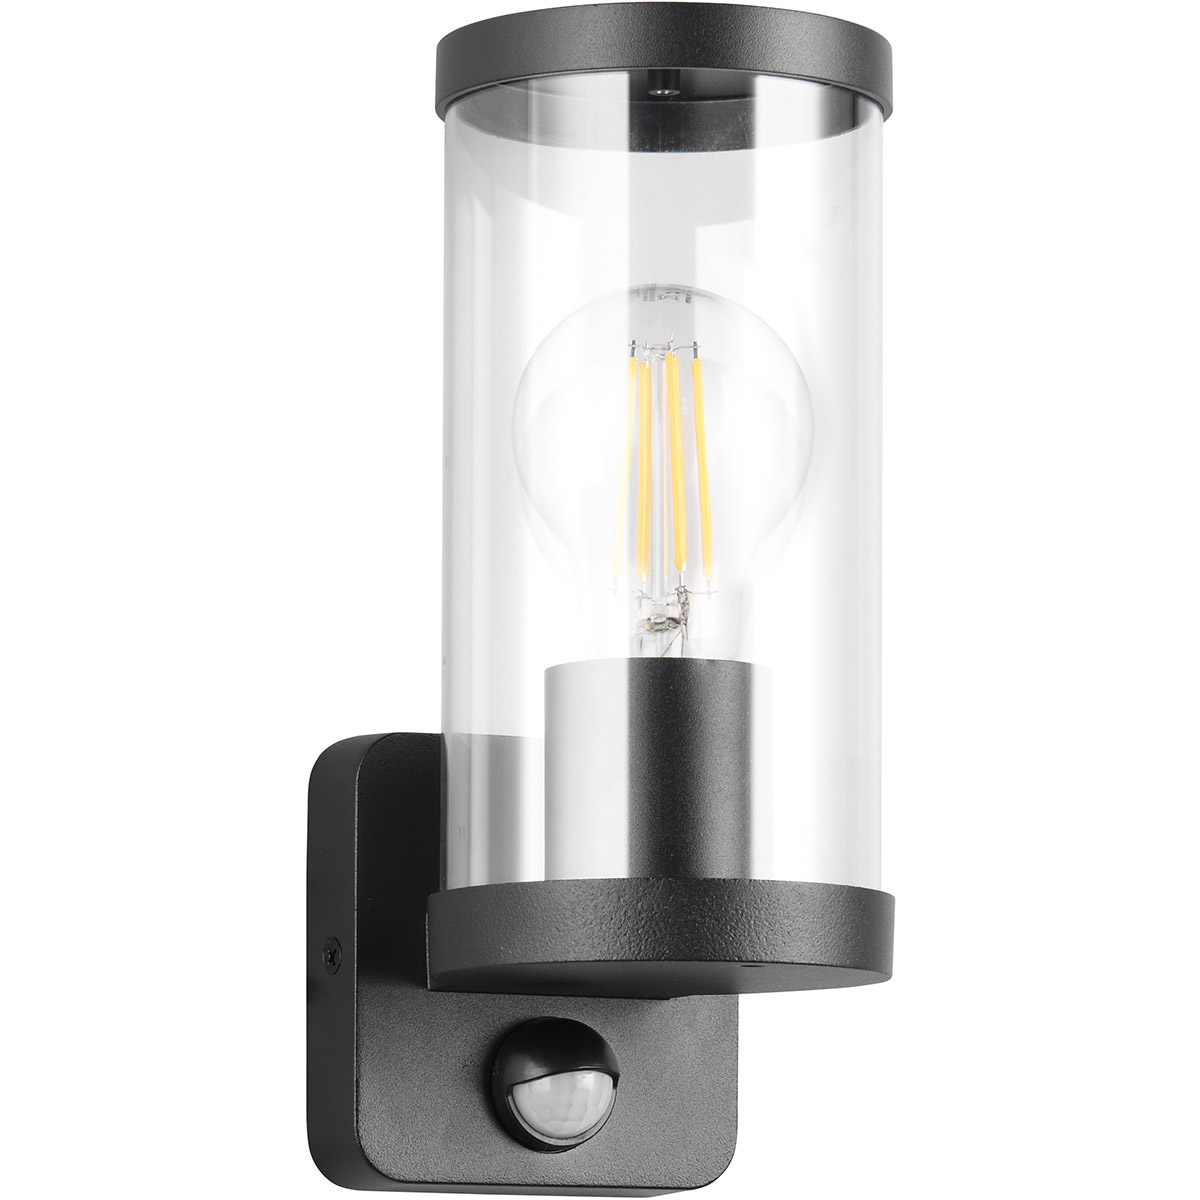 LED Tuinverlichting - Buitenlamp - Wandlamp - Trion Tino - E27 Fitting - Bewegingssensor - Mat Zwart - Aluminium